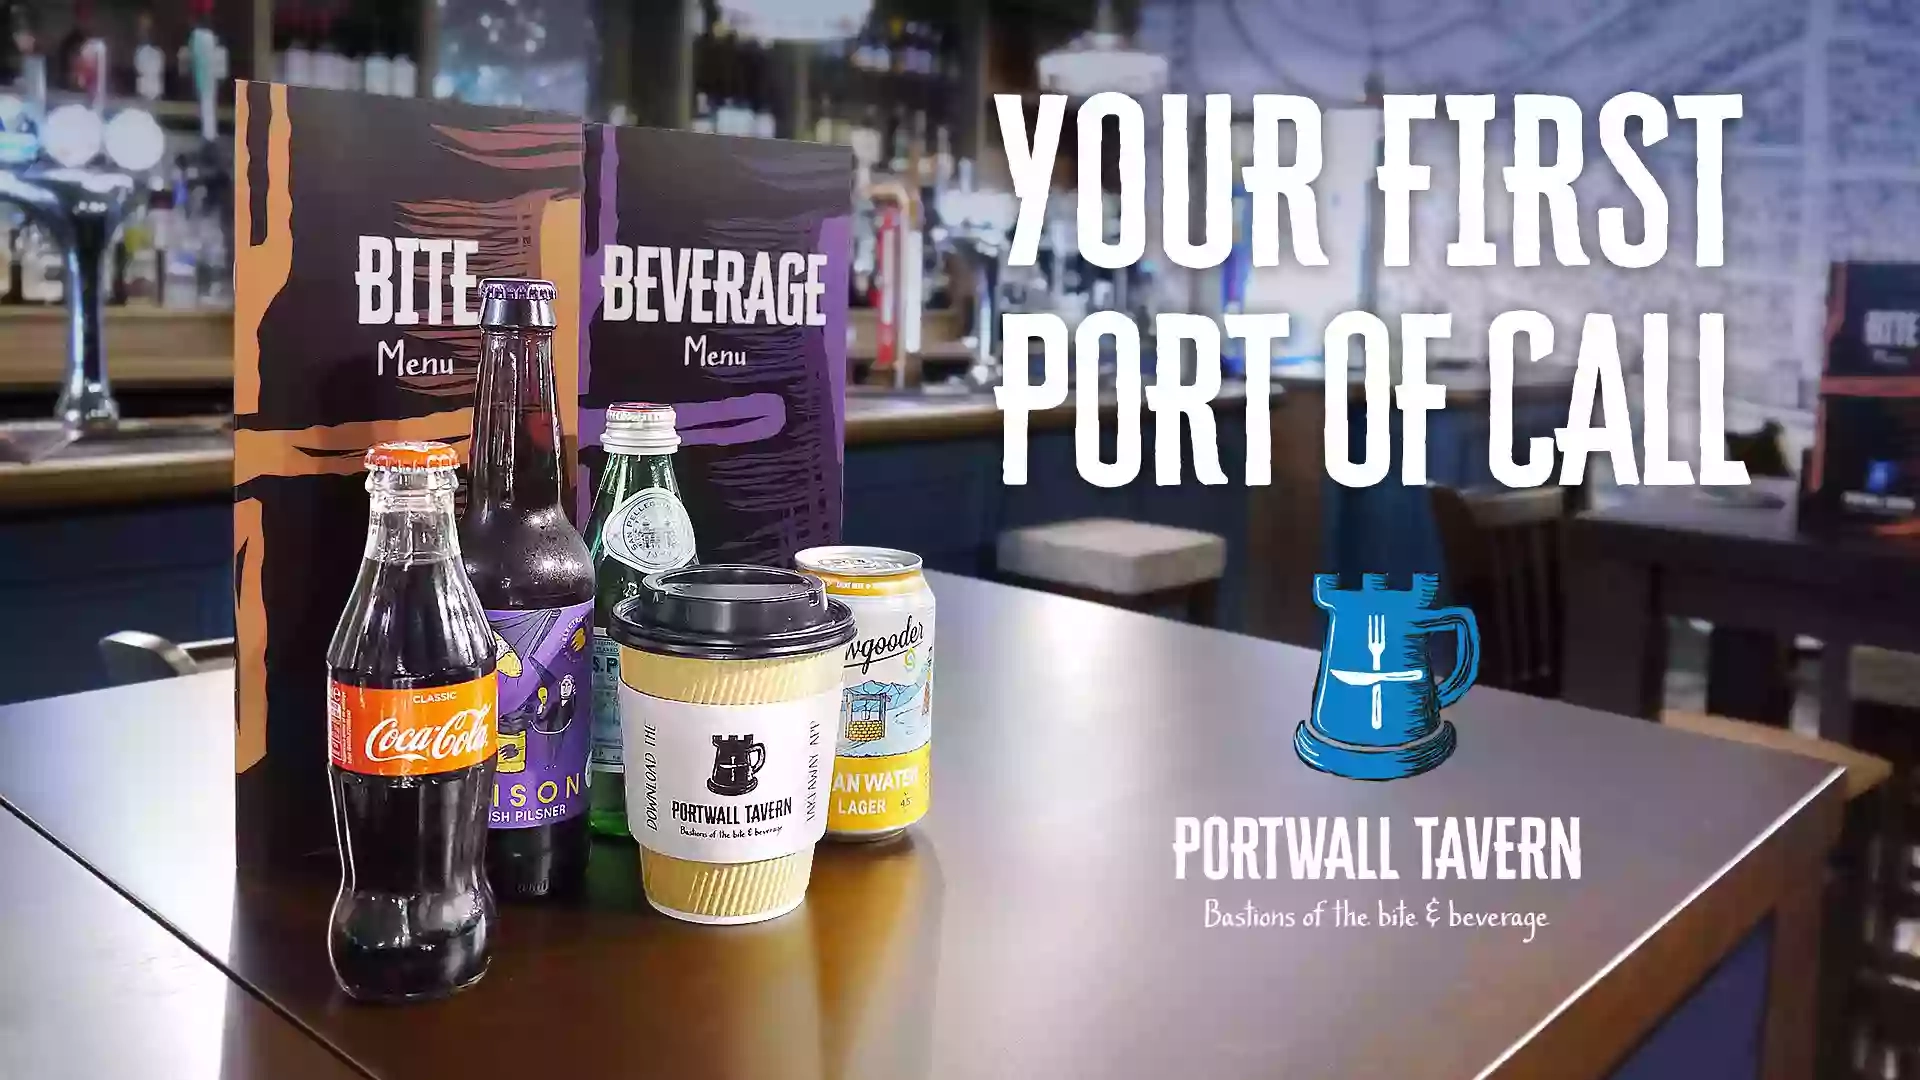 Portwall Tavern